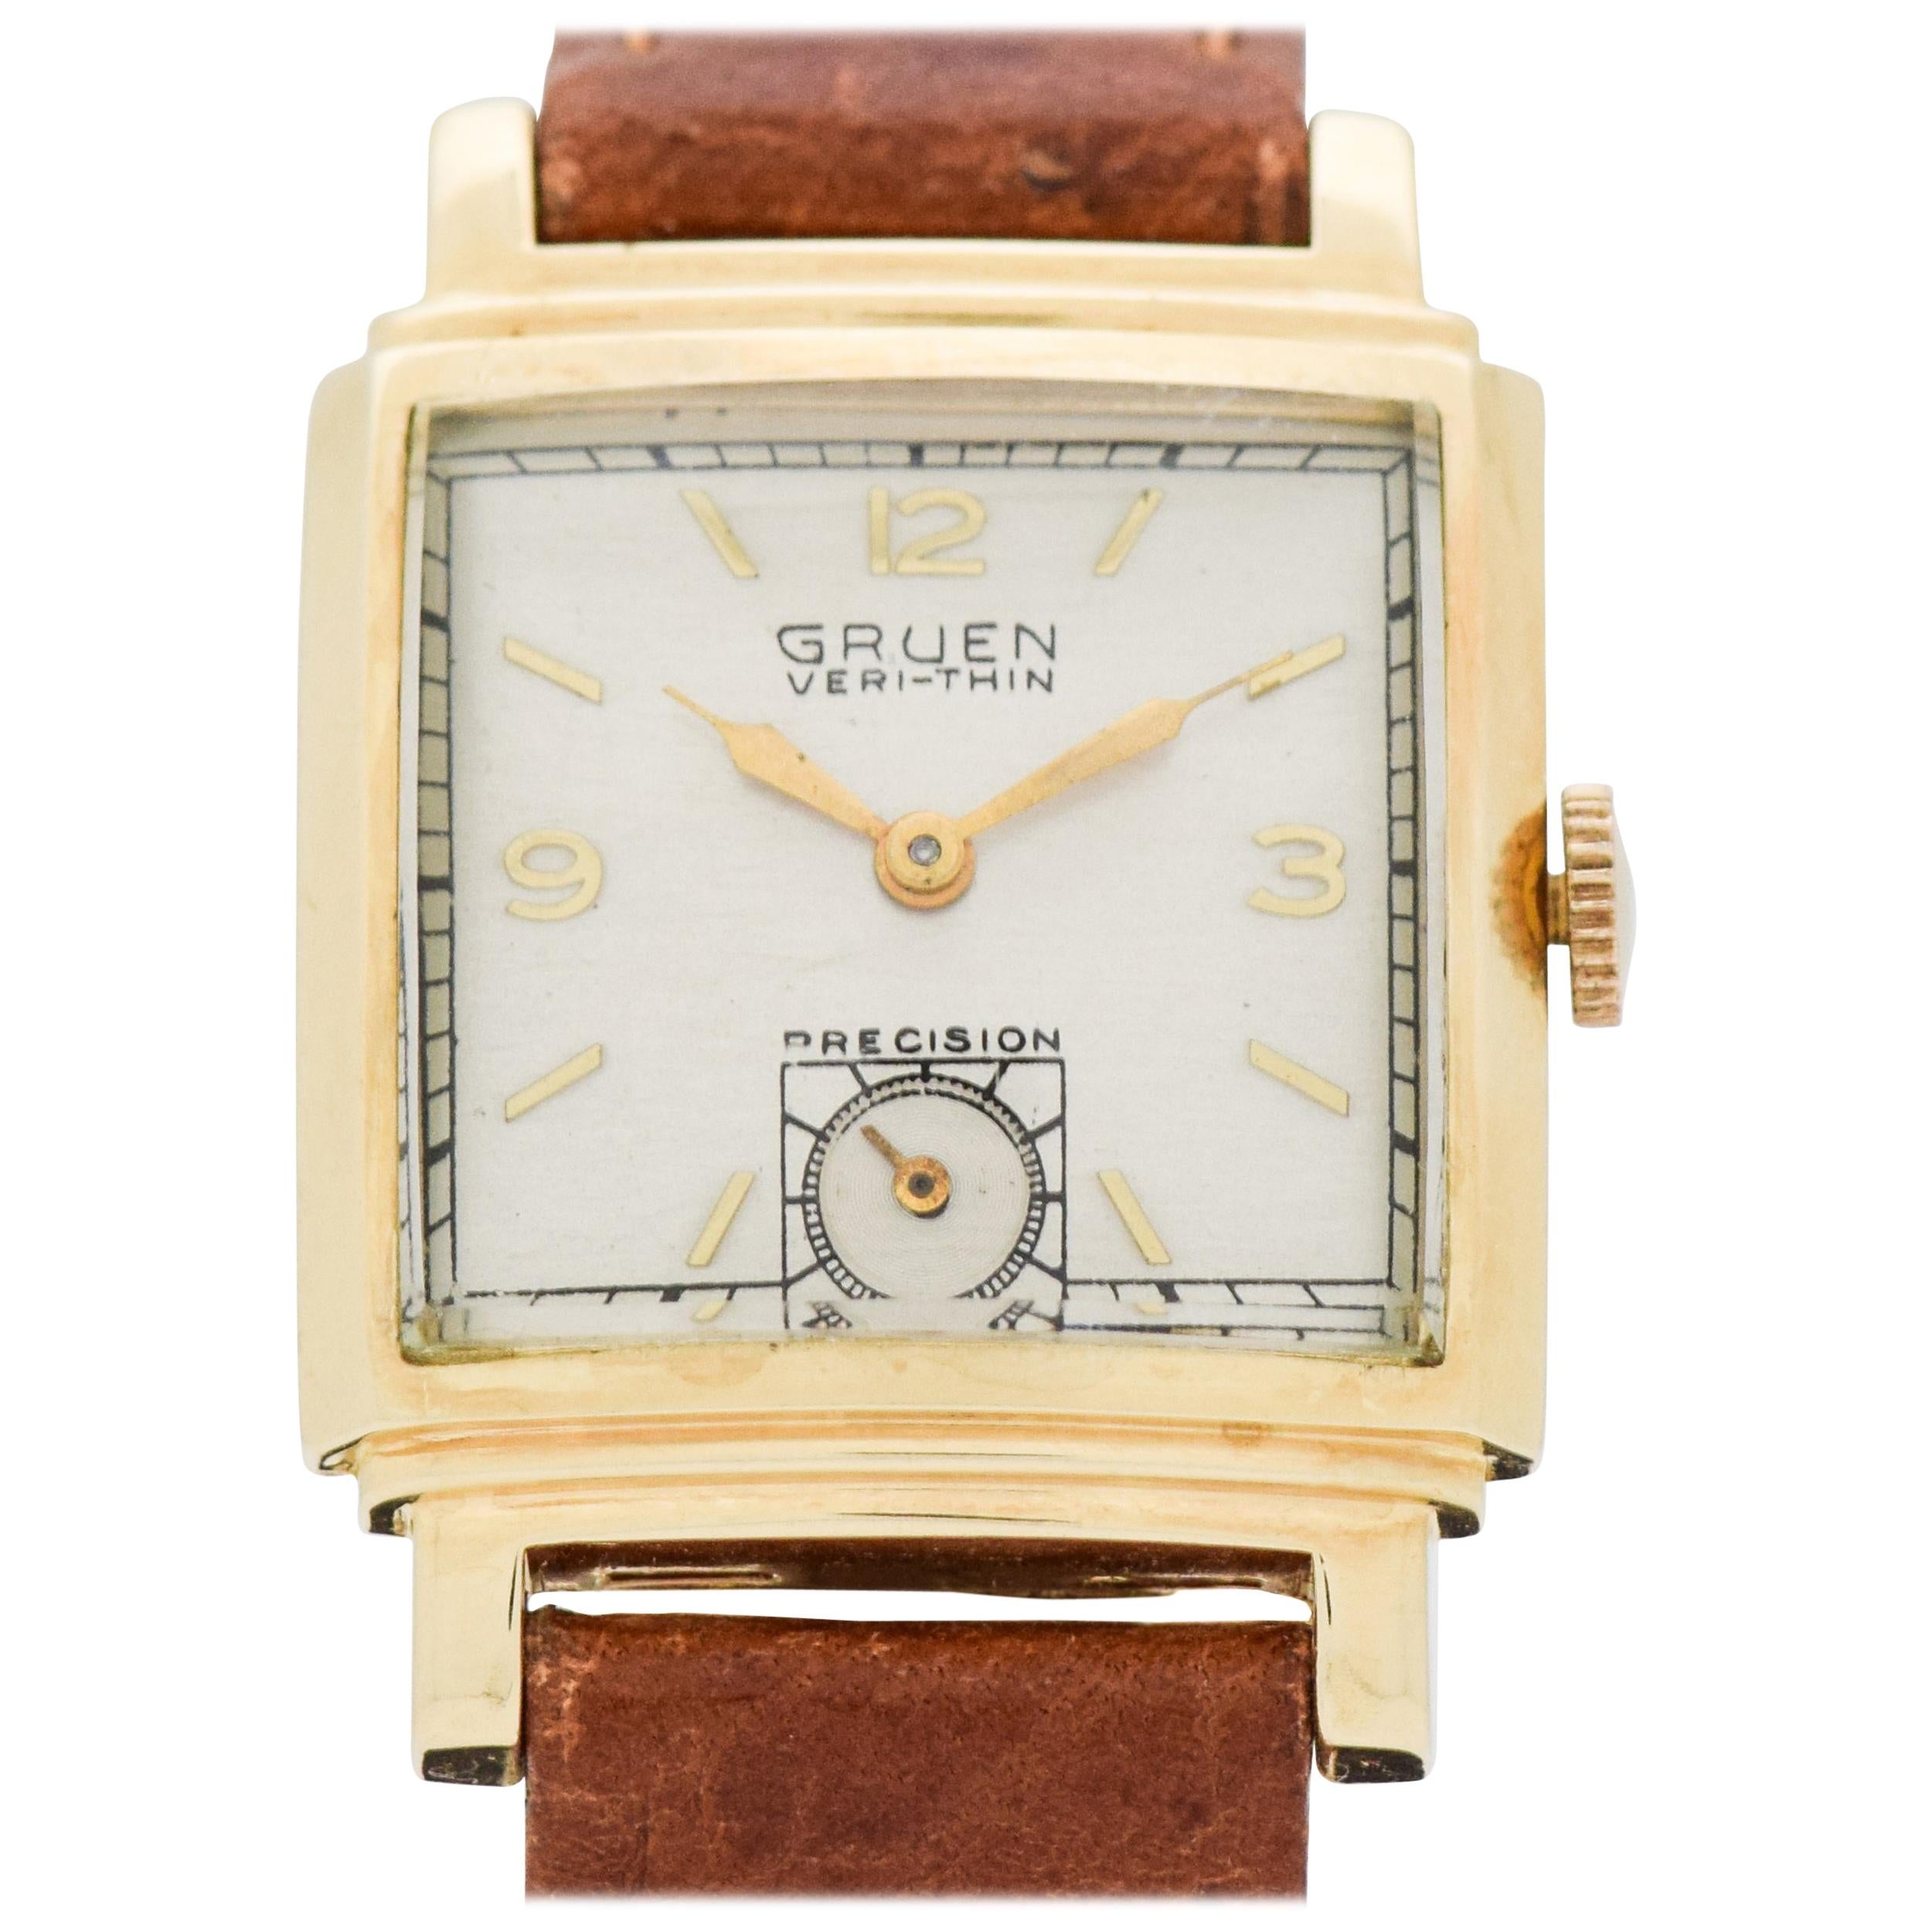 Vintage Gruen Veri-Thin Precision 14 Karat Yellow Gold Watch, 1947